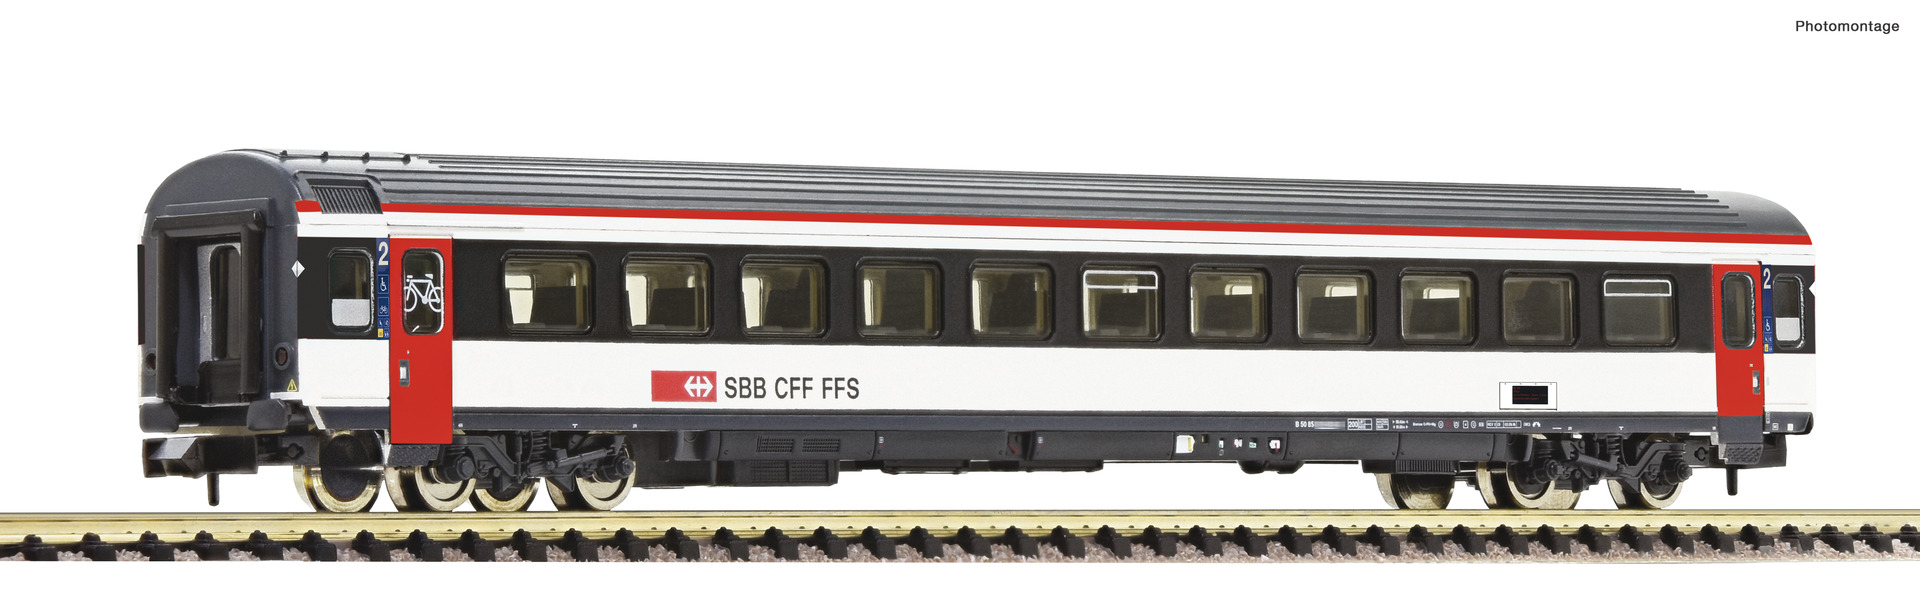 Fleischmann 6260017, Spur N, SBB Reisezugwagen 2. Klasse, EW IV, Ep. VI